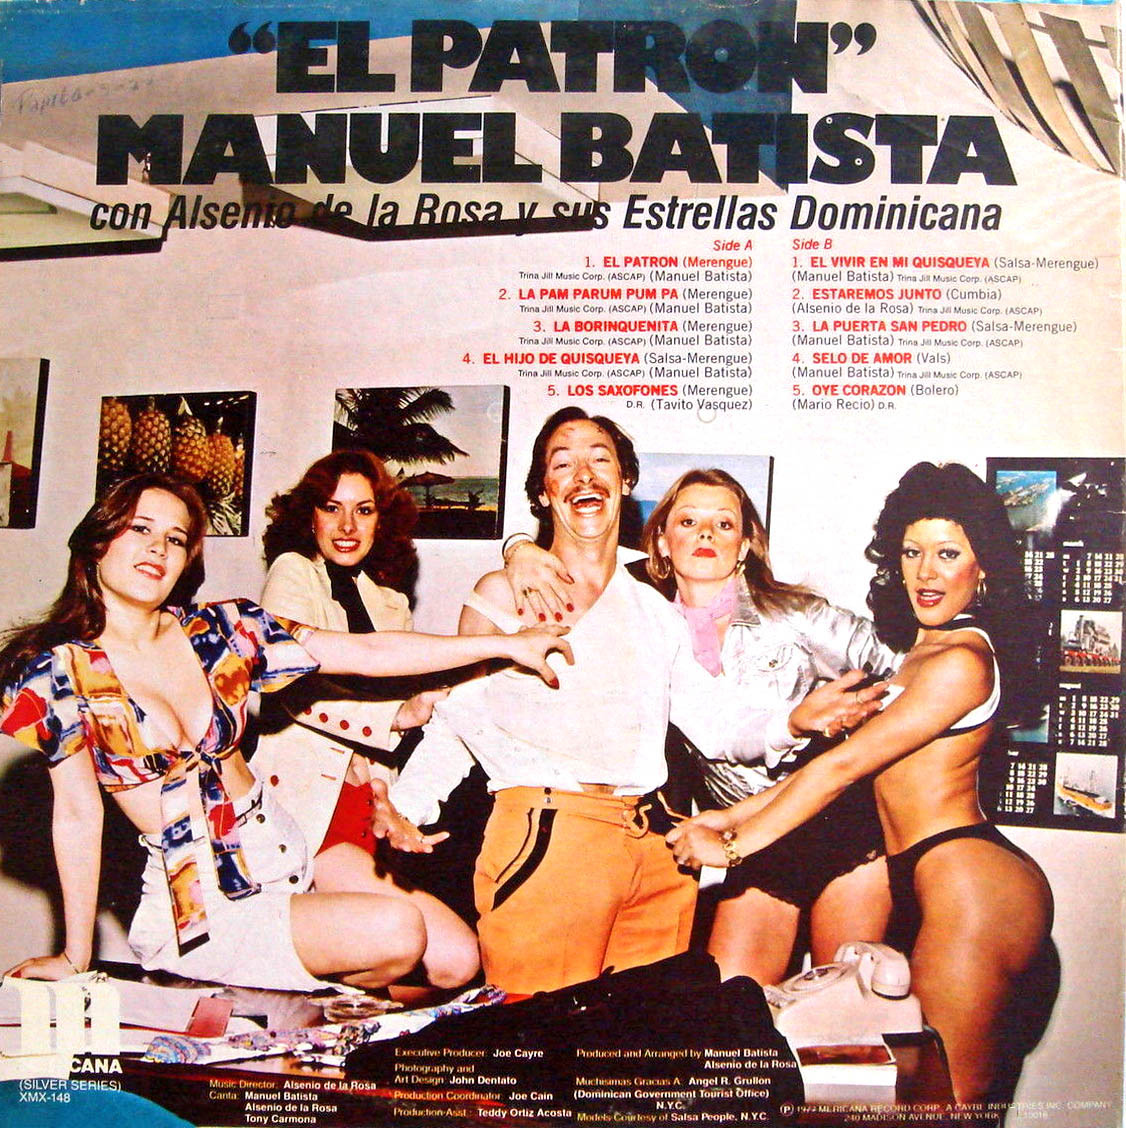 MANUEL BATISTA album cover